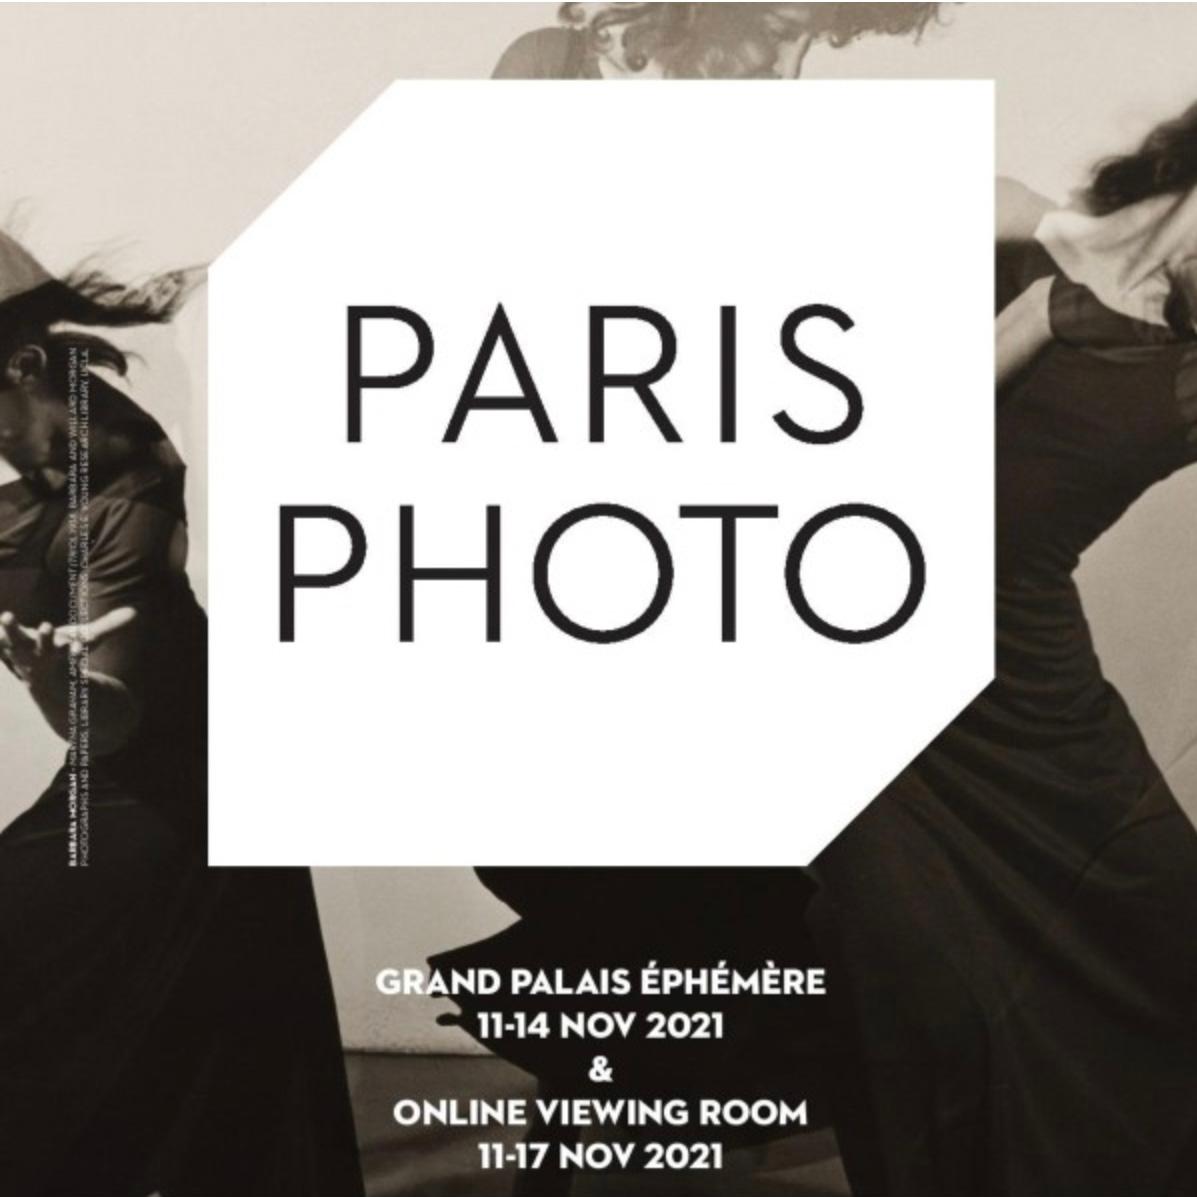 L'Observatoire : Paris Photo, l’internationale - Cotes et tendances